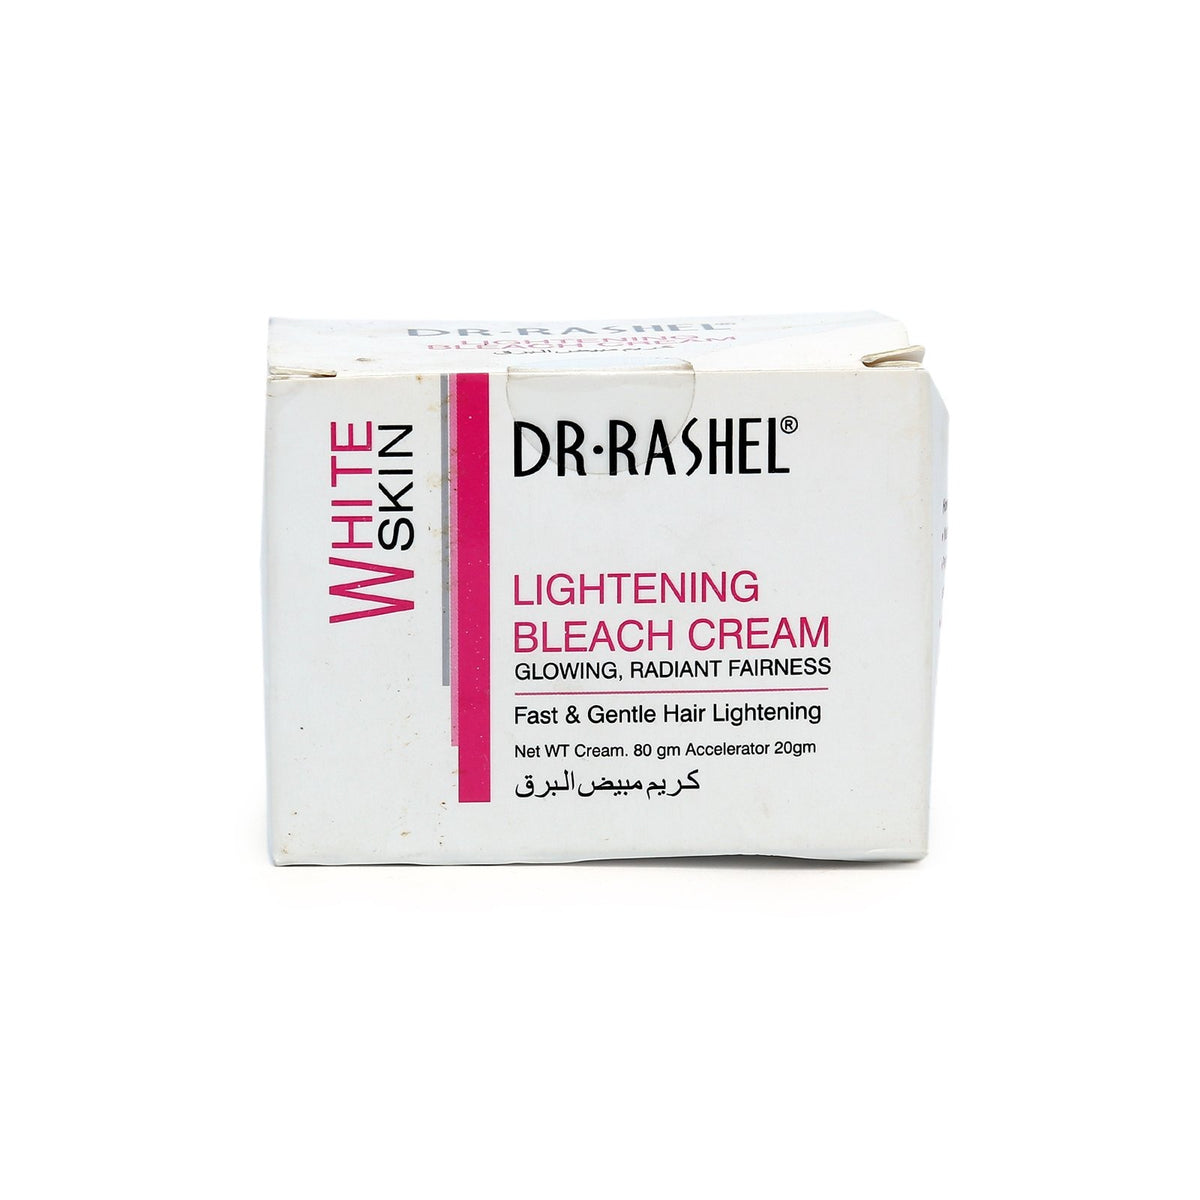 Dr Rashel Bleach Cream Lightening White Skin freeshipping - lasertag.pk